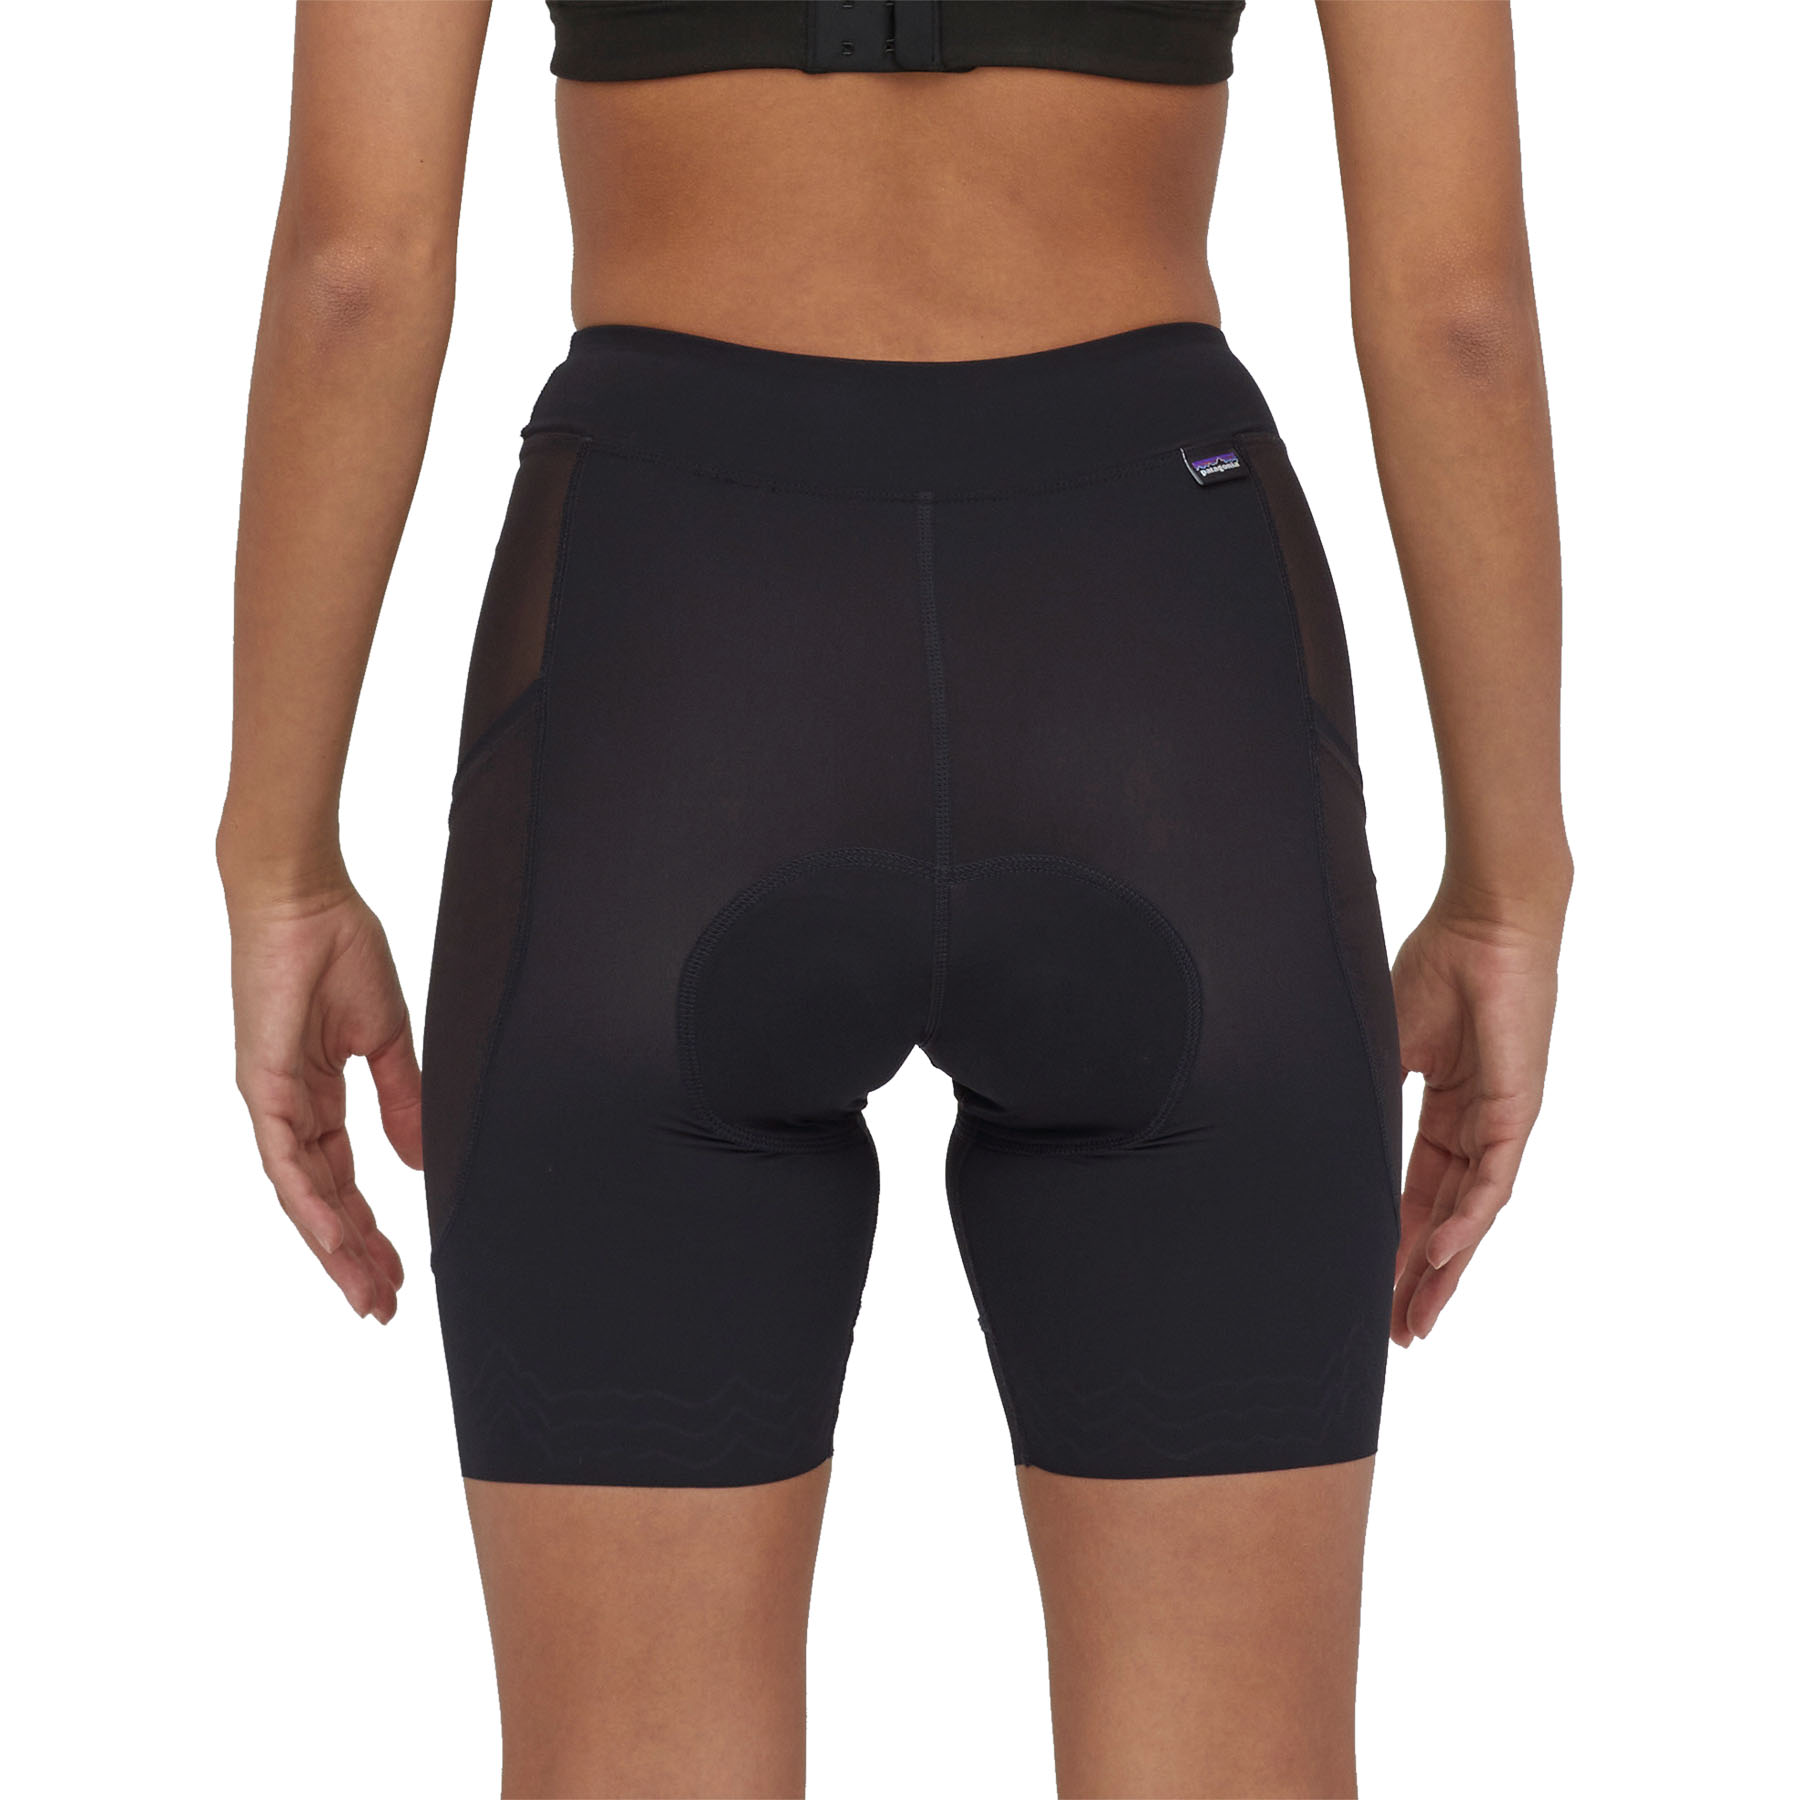 PATAGONIA Women's Dirt Roamer Bike Liner Shorts - 8" Black